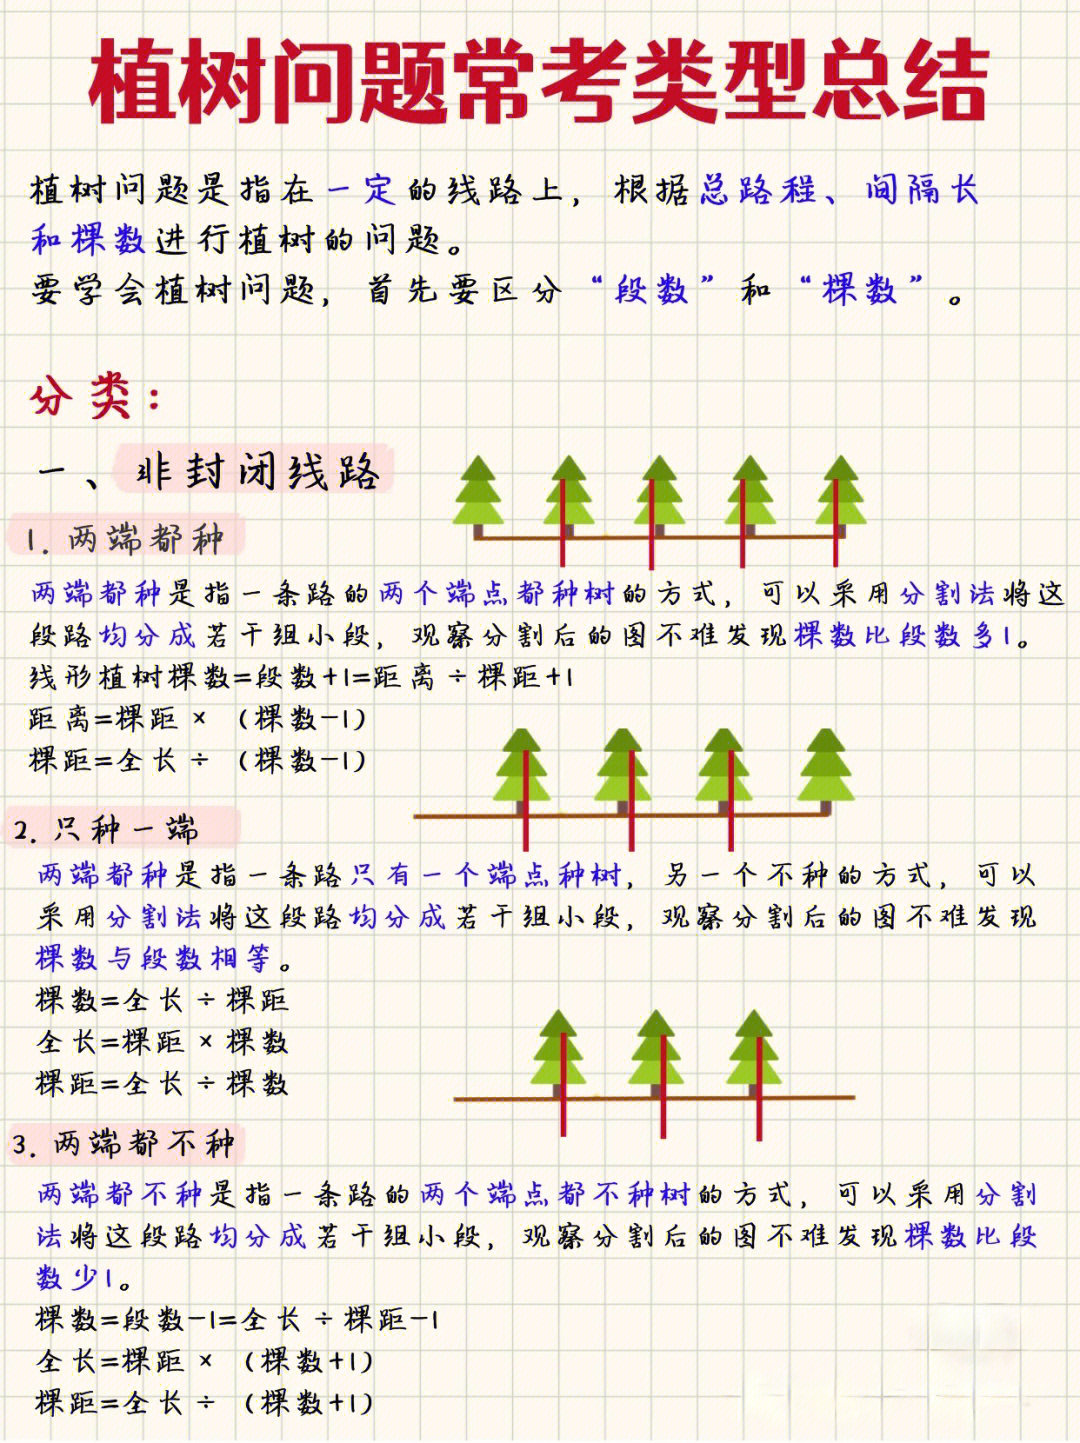 植树的5个步骤排序图片